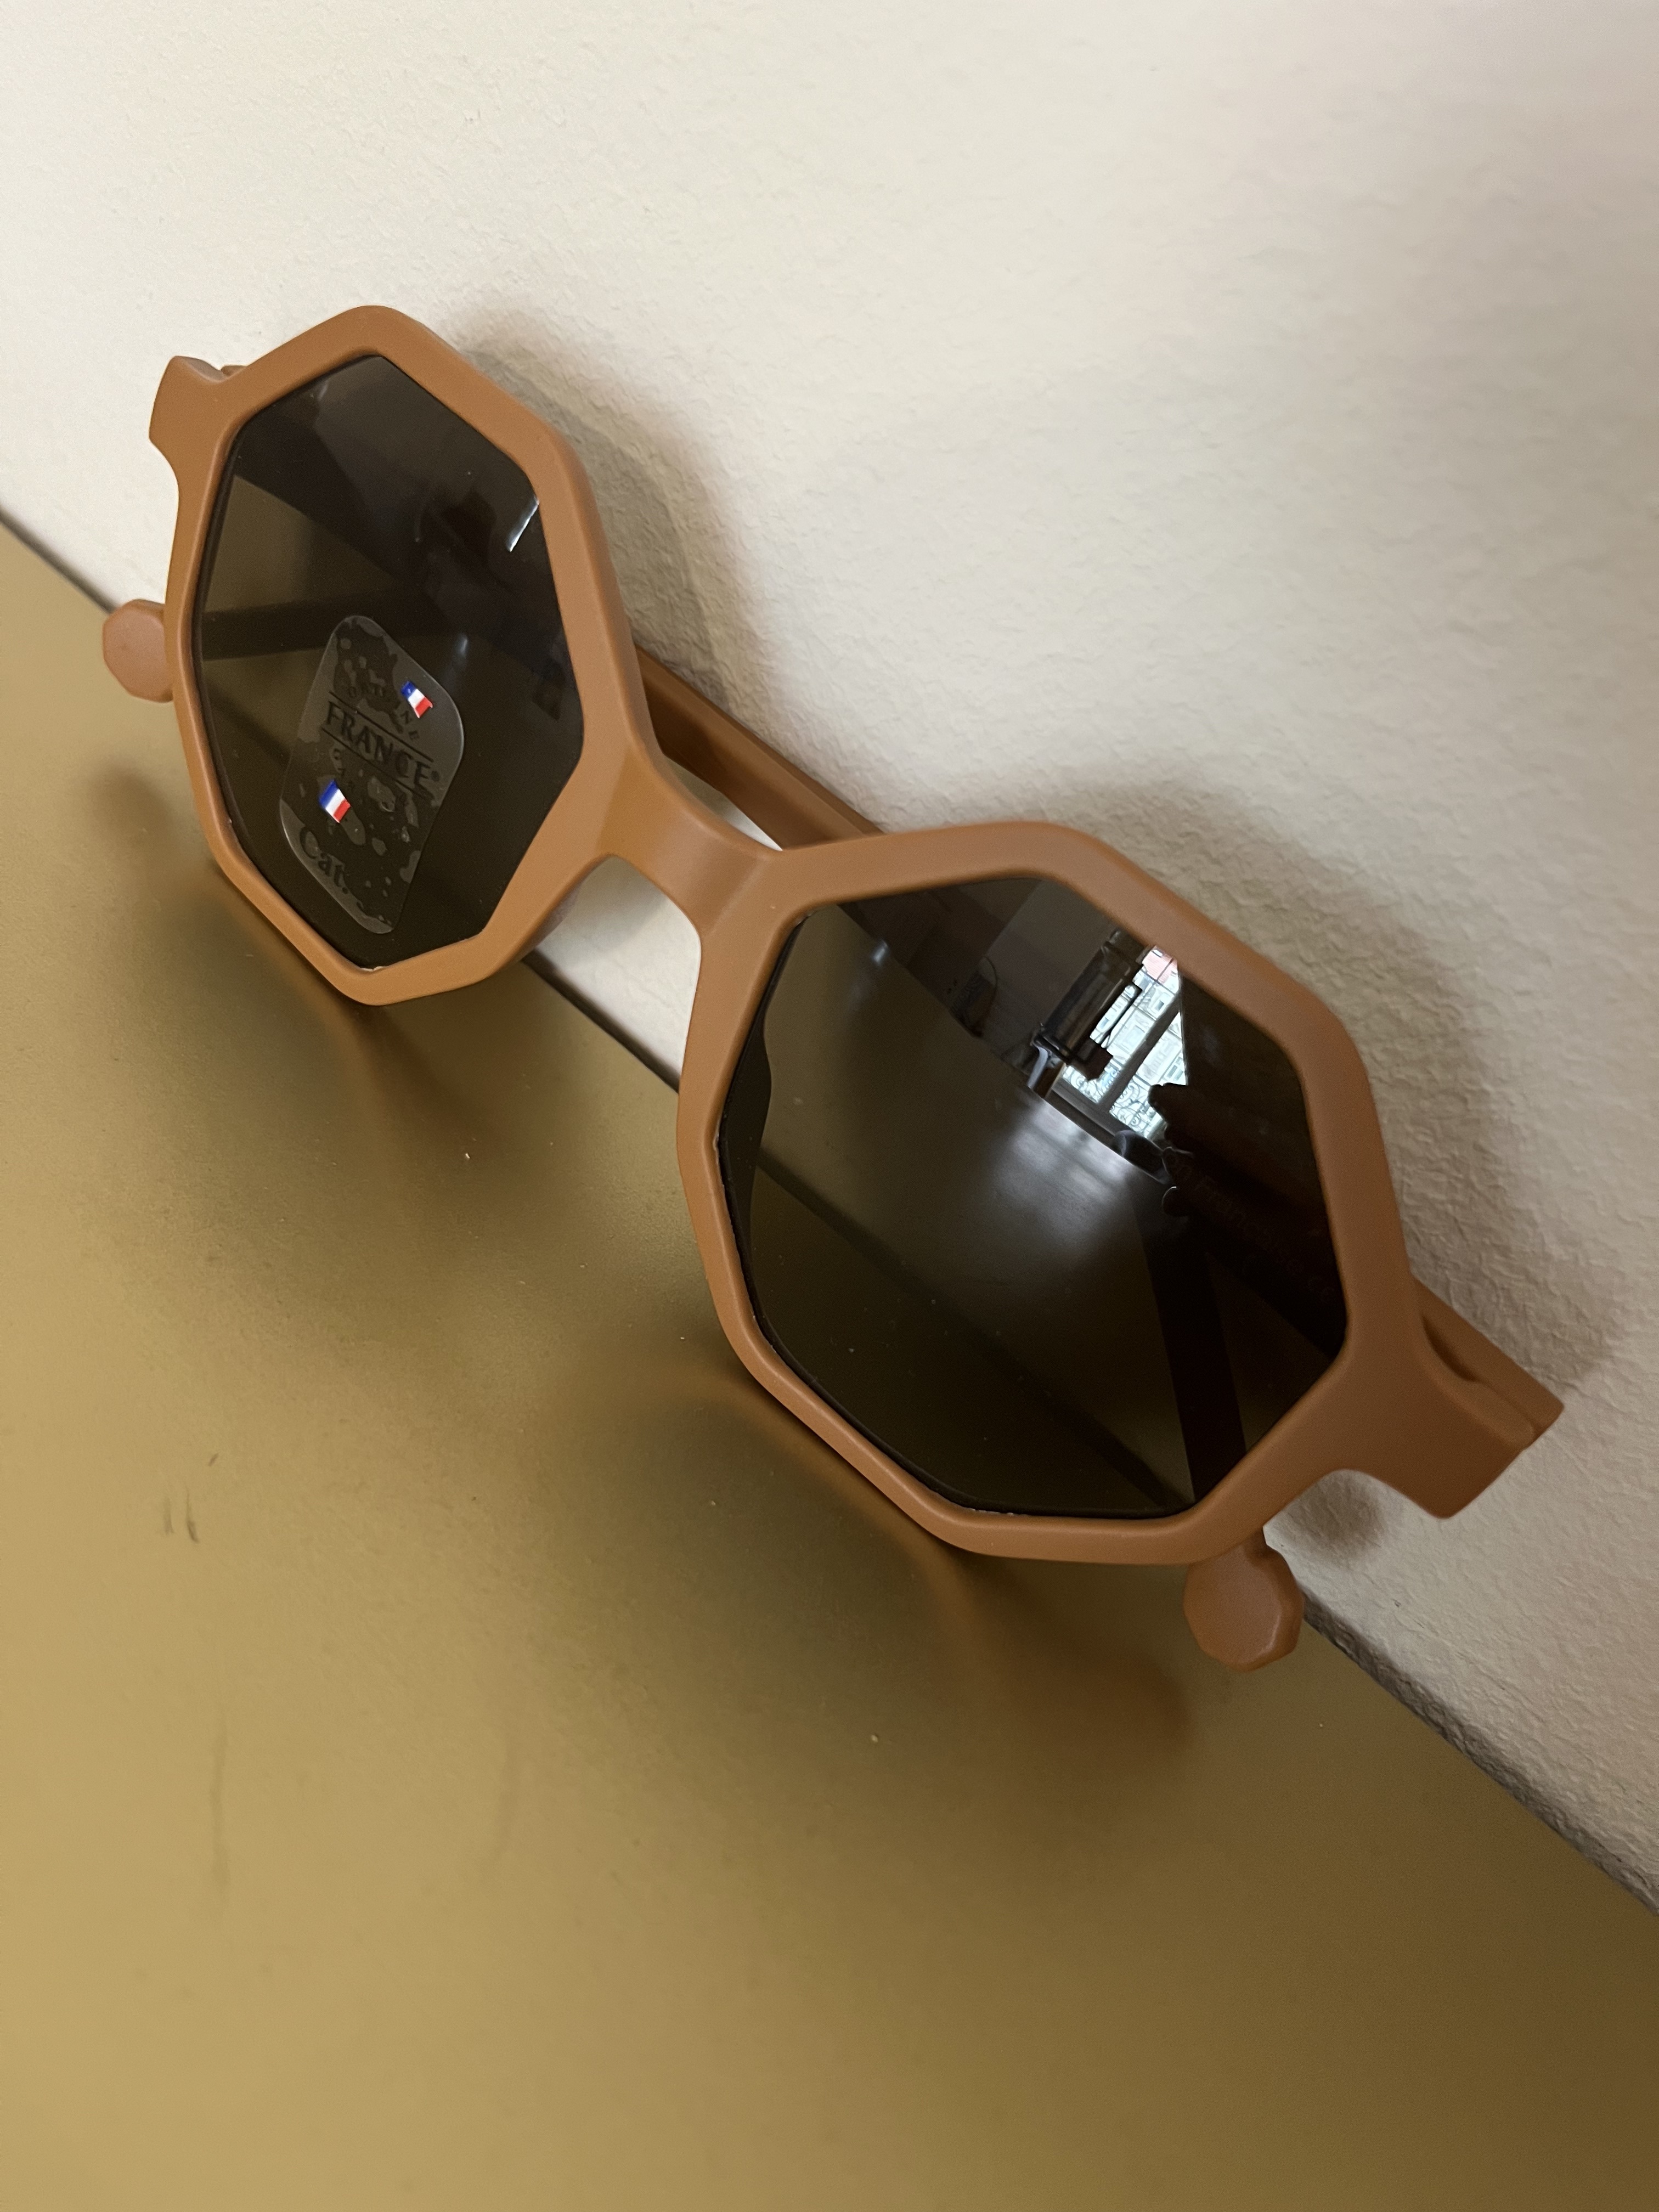 lunettes-de-soleil-pour-adultes-de-couleur-camel-selection-de-l-appatement-moeme-boutique-en-appartement-sur-rendez-vous-metz-moselle-eshop.jpg